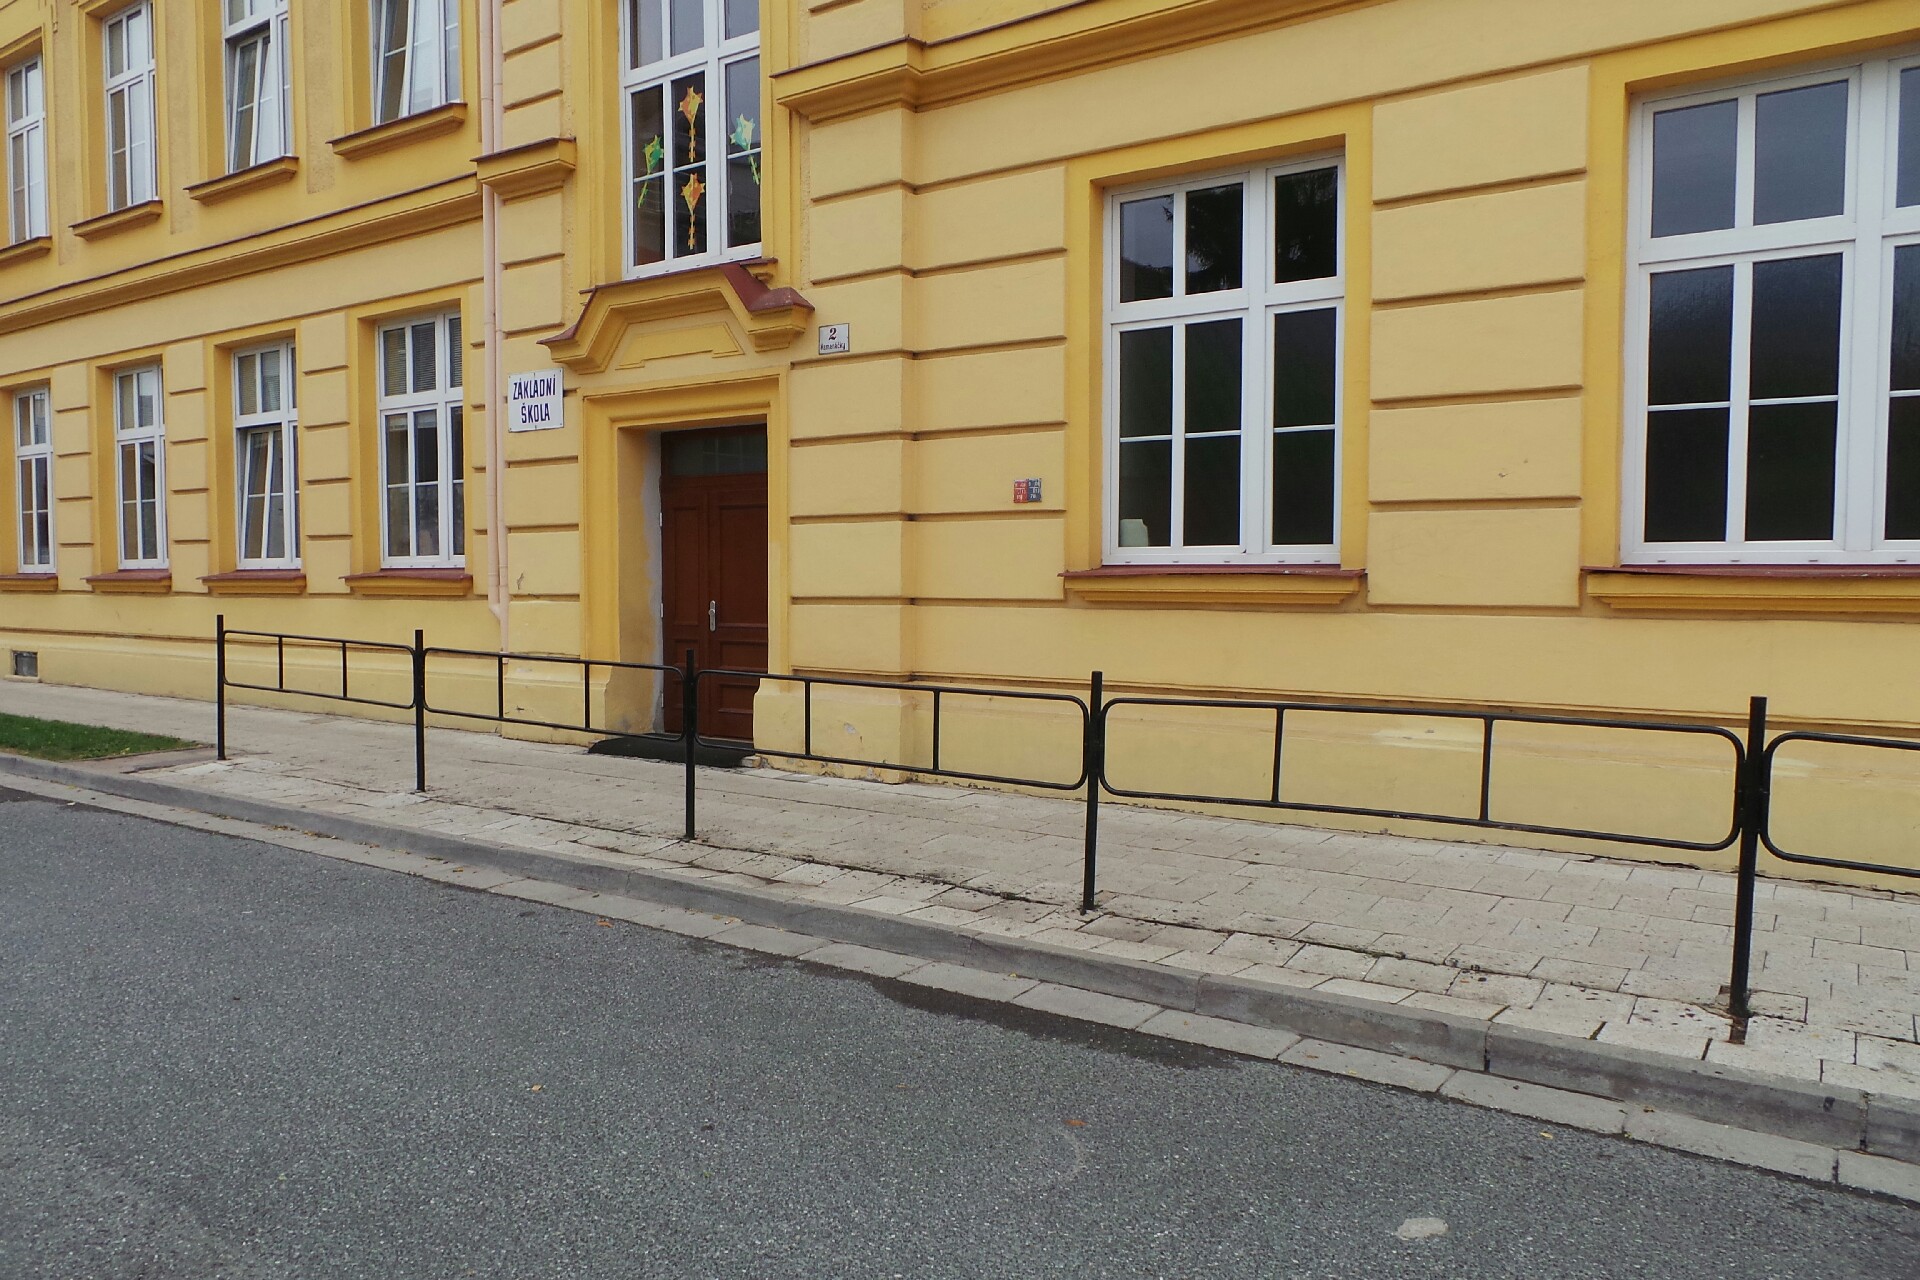 File:Brno-Zidenice - Zakladni skola Gajdosova.jpg - Wikimedia Commons